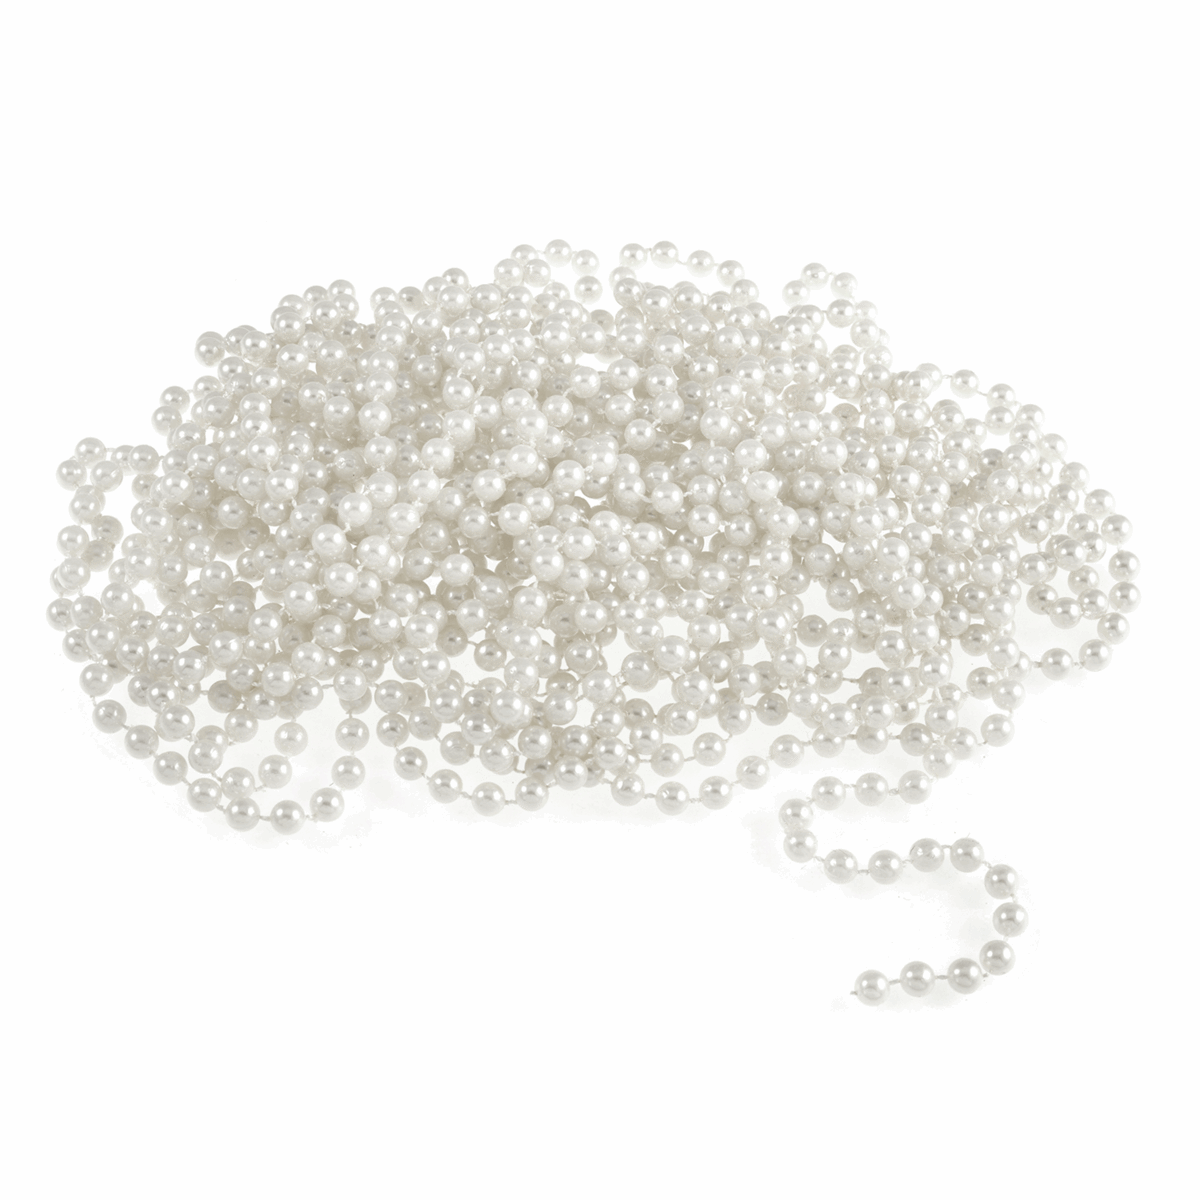 Bridal White Pearl Bead Chain - 10m x 8mm